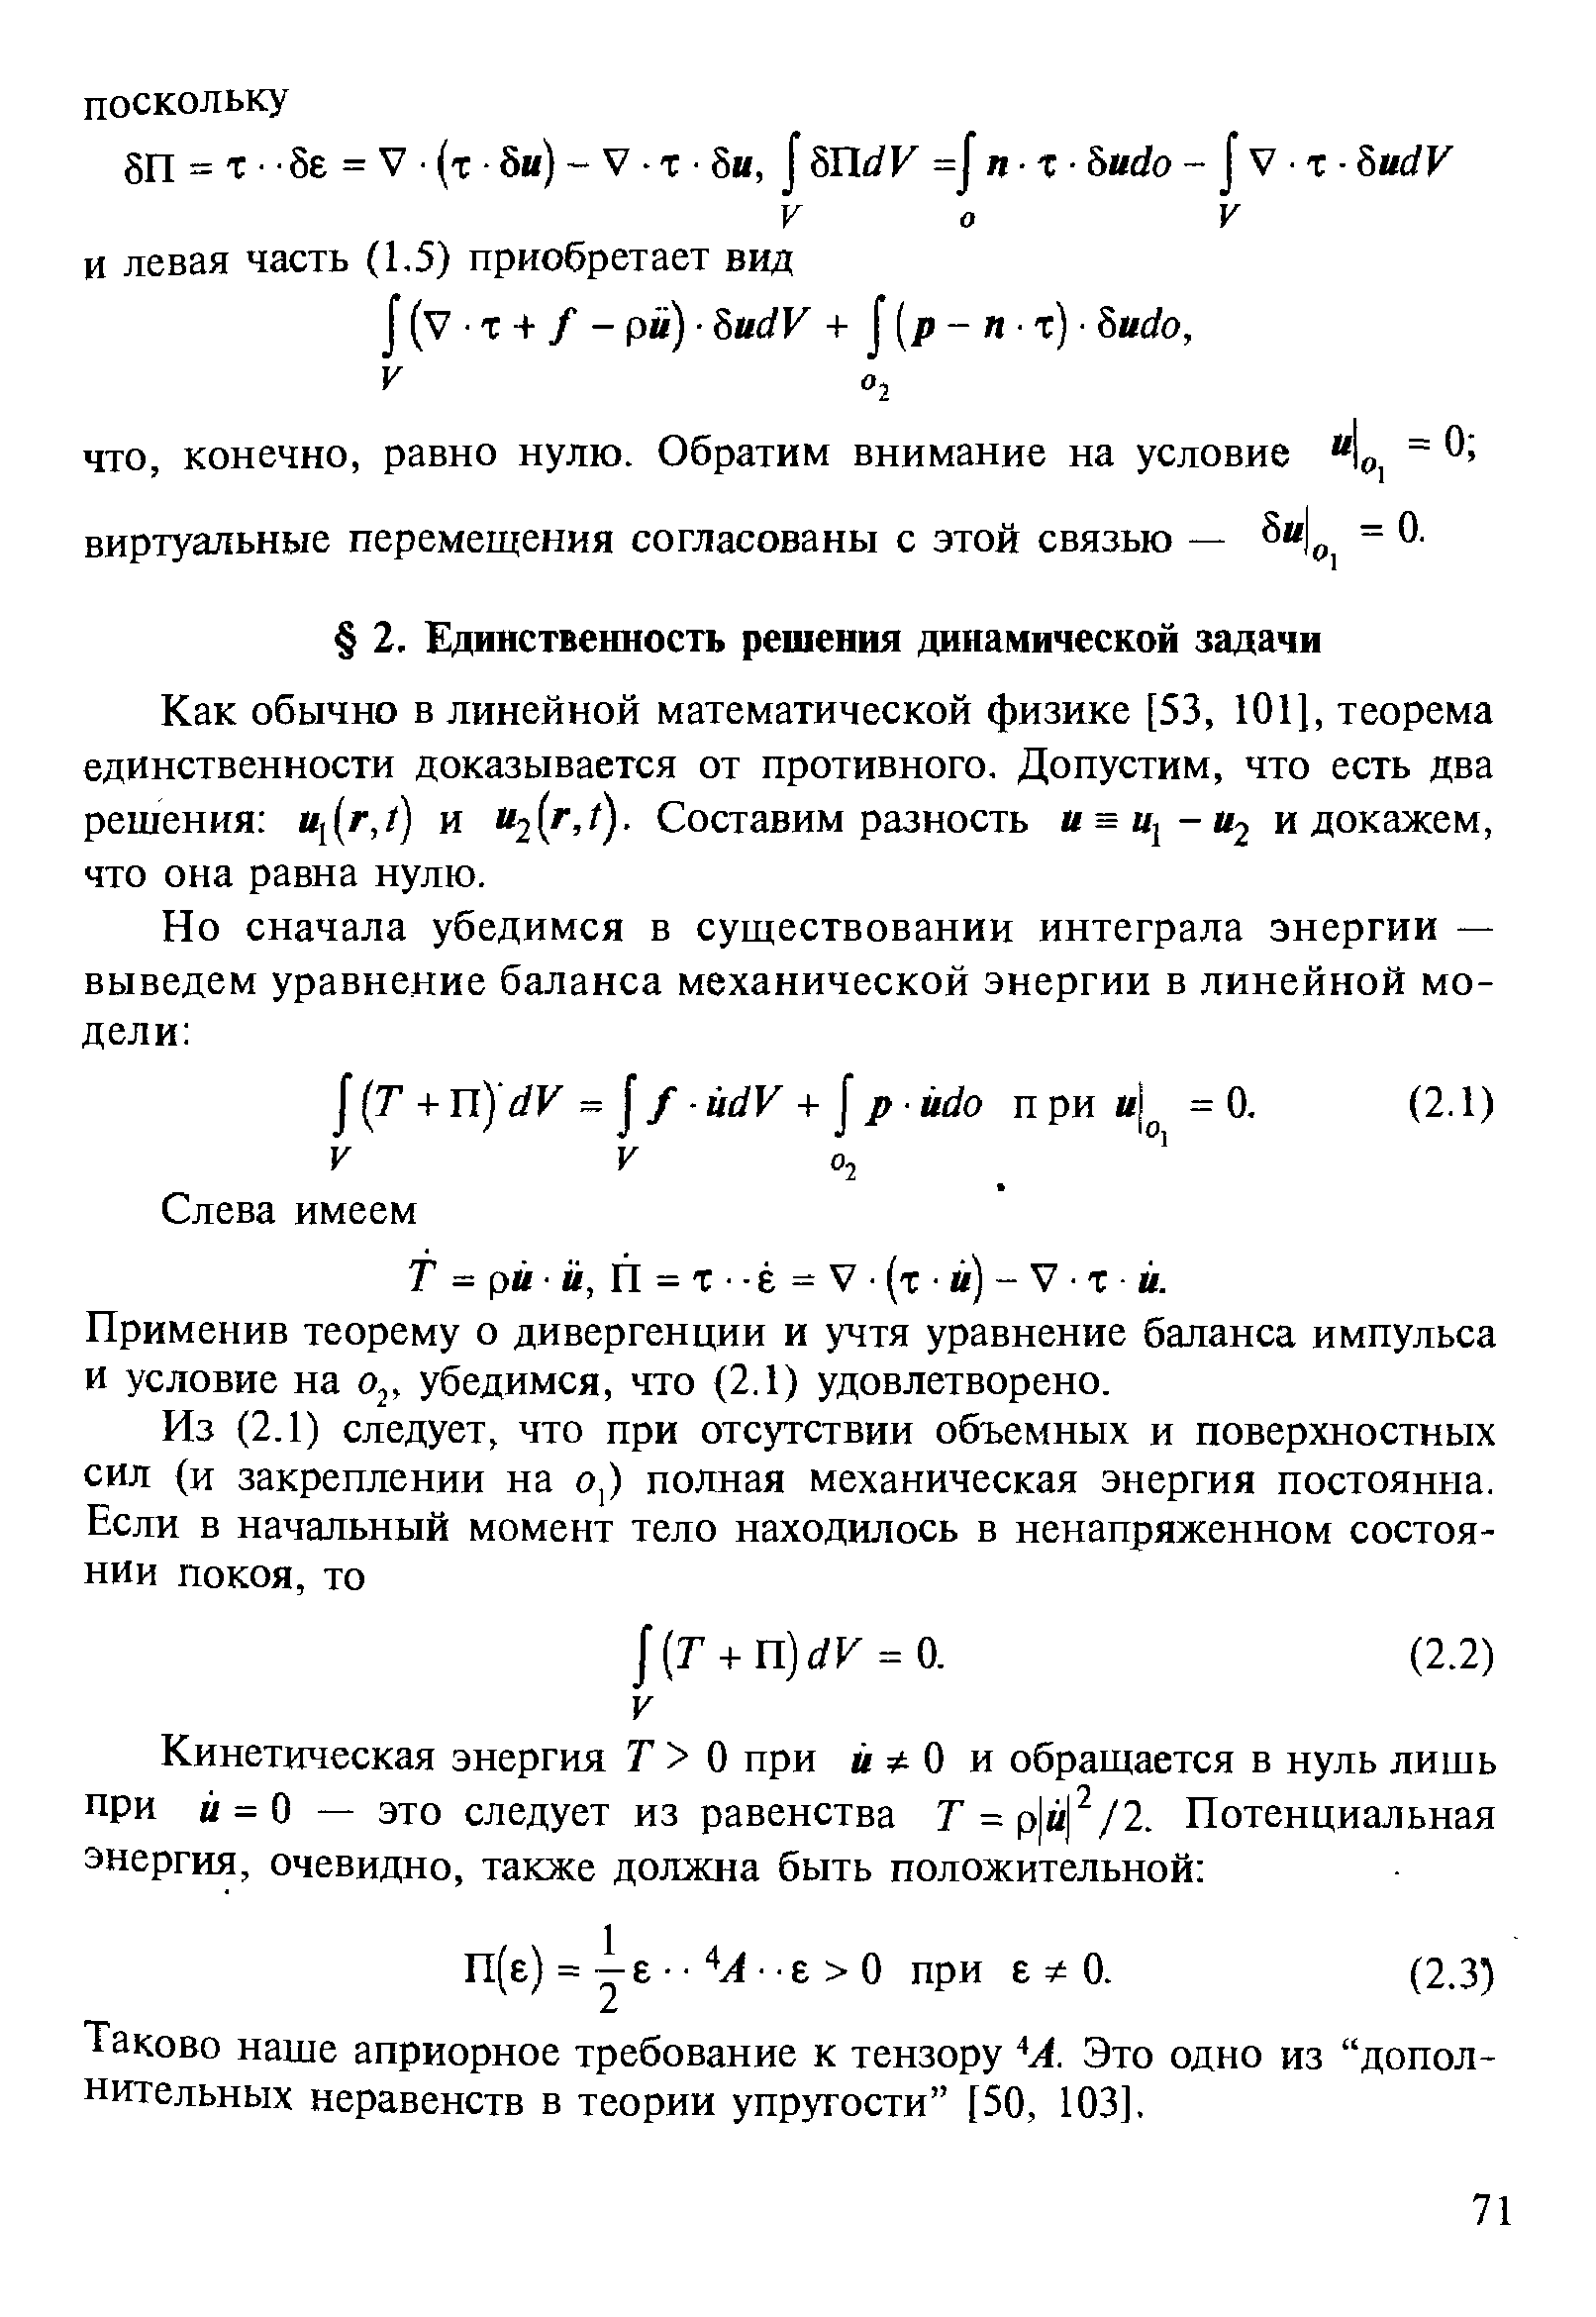 Применив теорему о дивергенции и учтя уравнение баланса импульса и условие на убедимся, что (2.1) удовлетворено.
